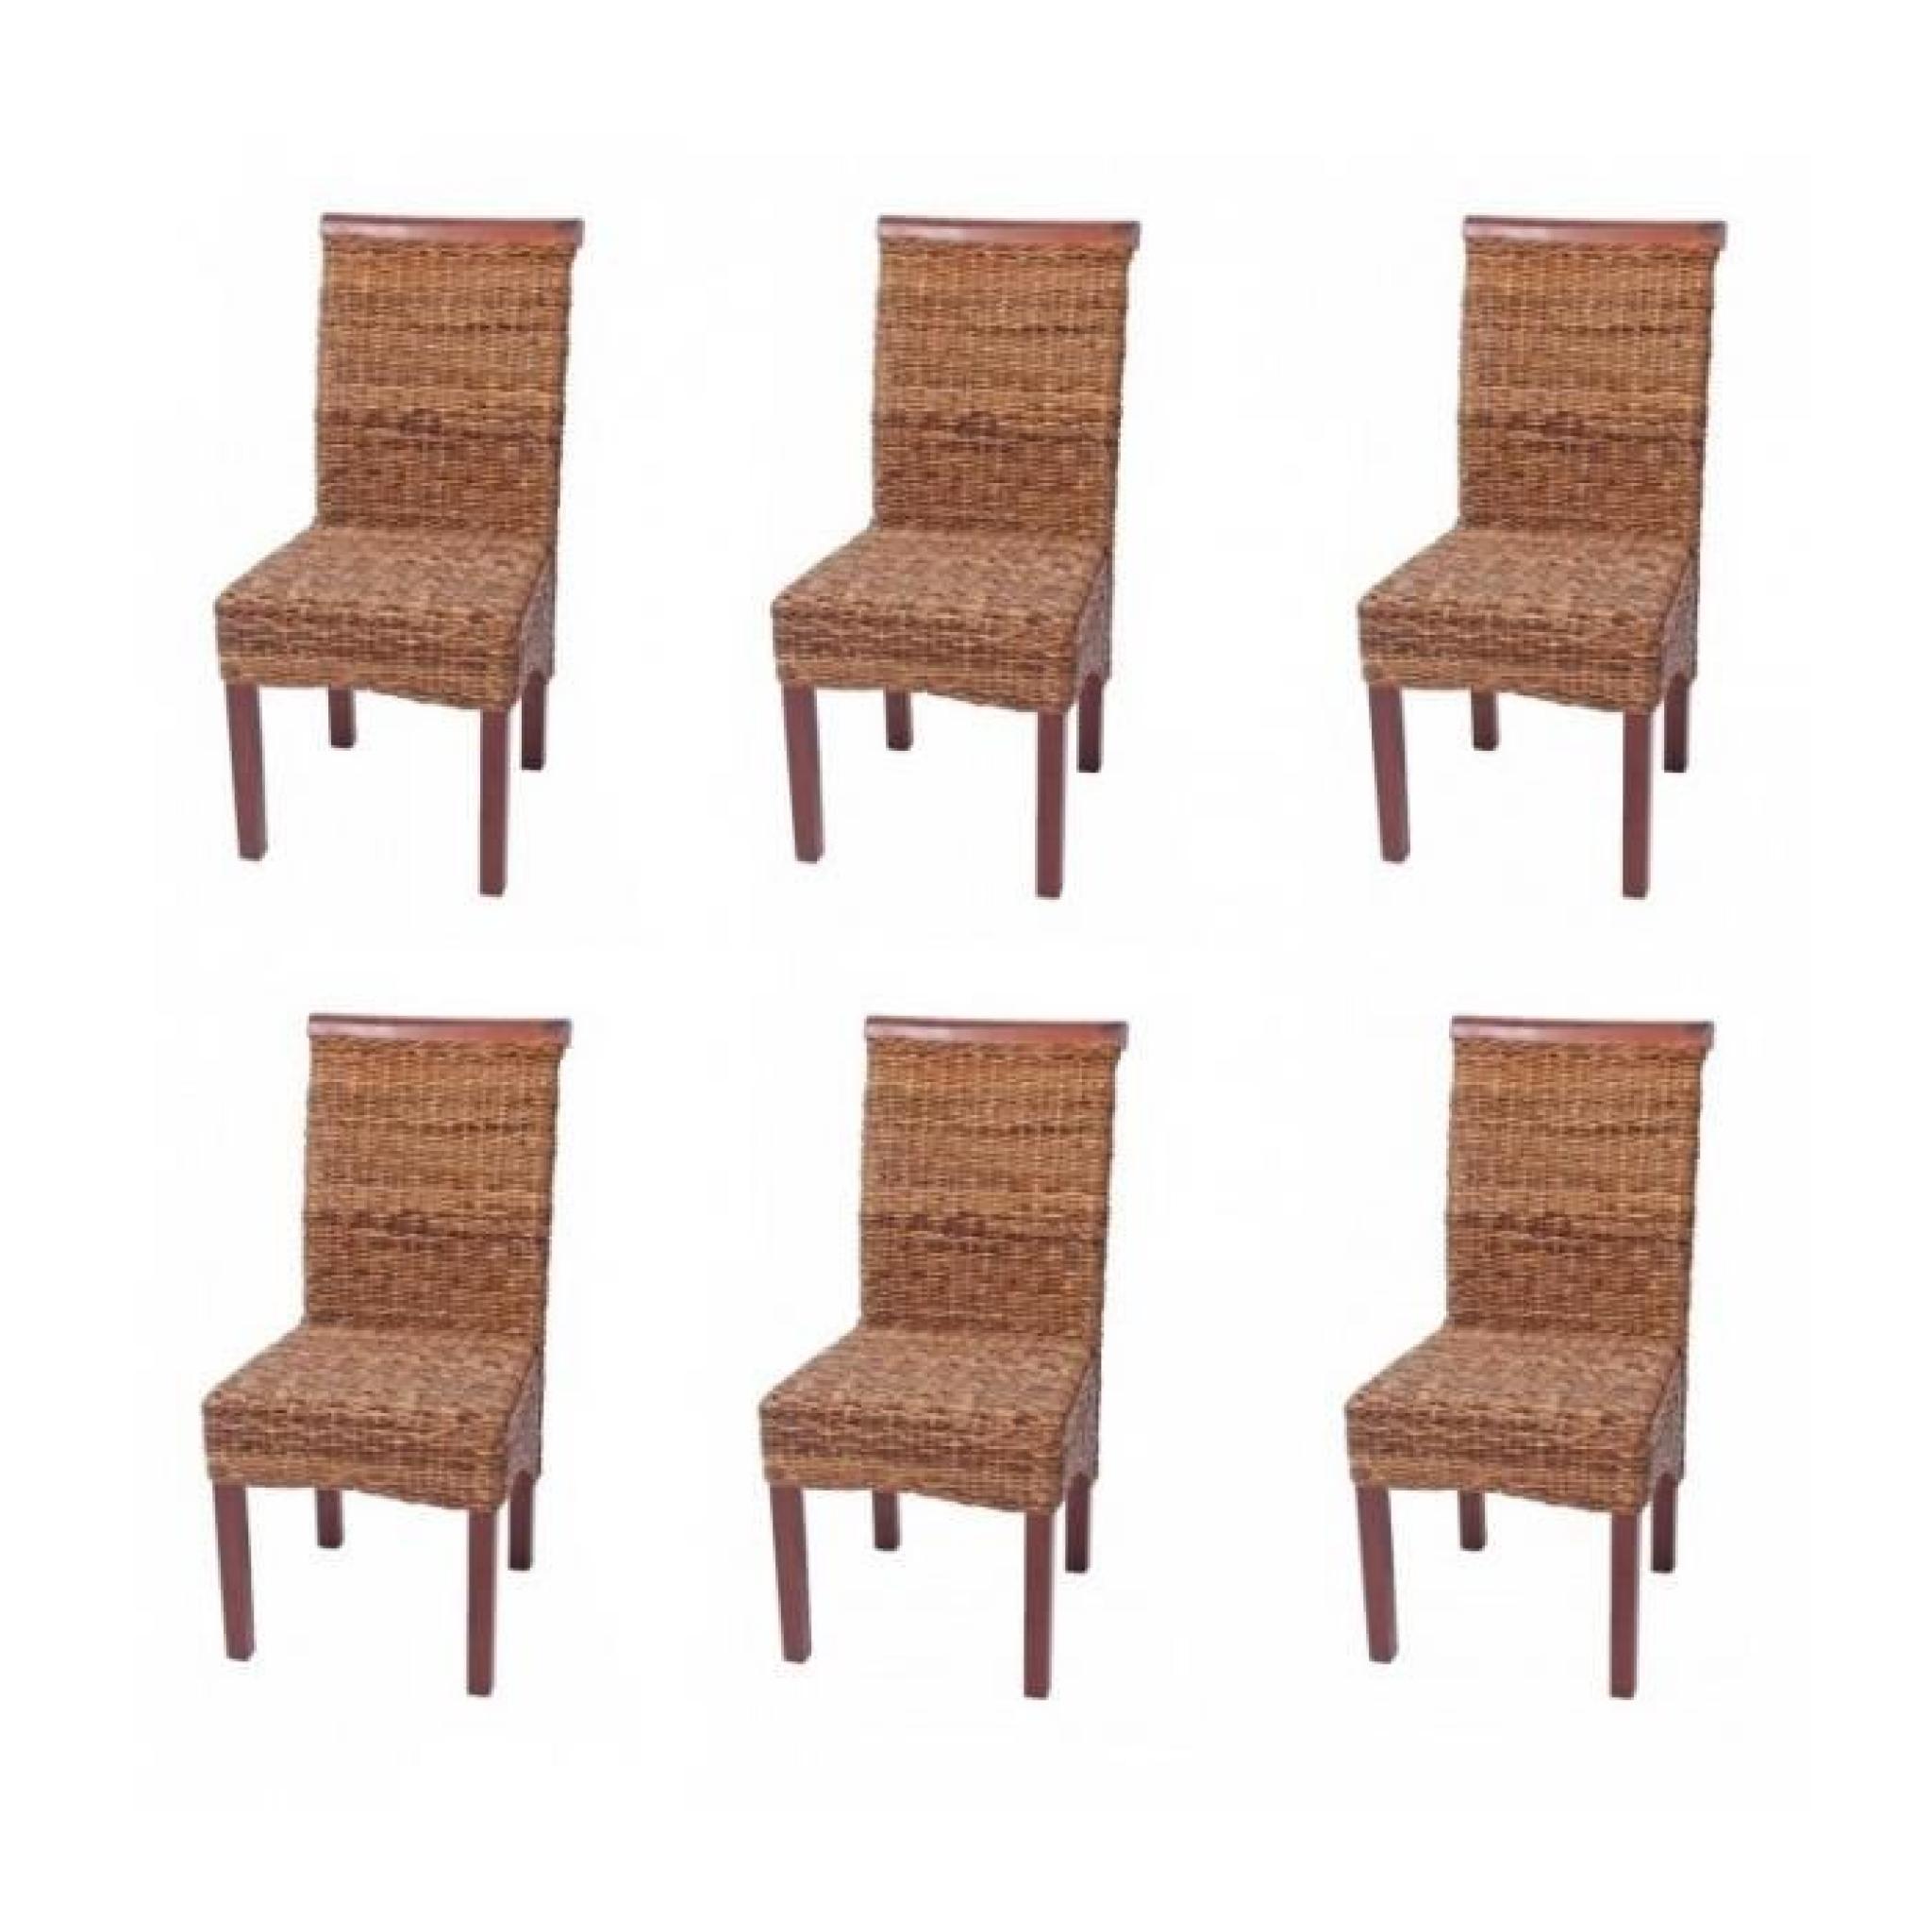 Lot de 6 chaises en rotin banane tressée pieds marron CDS04202